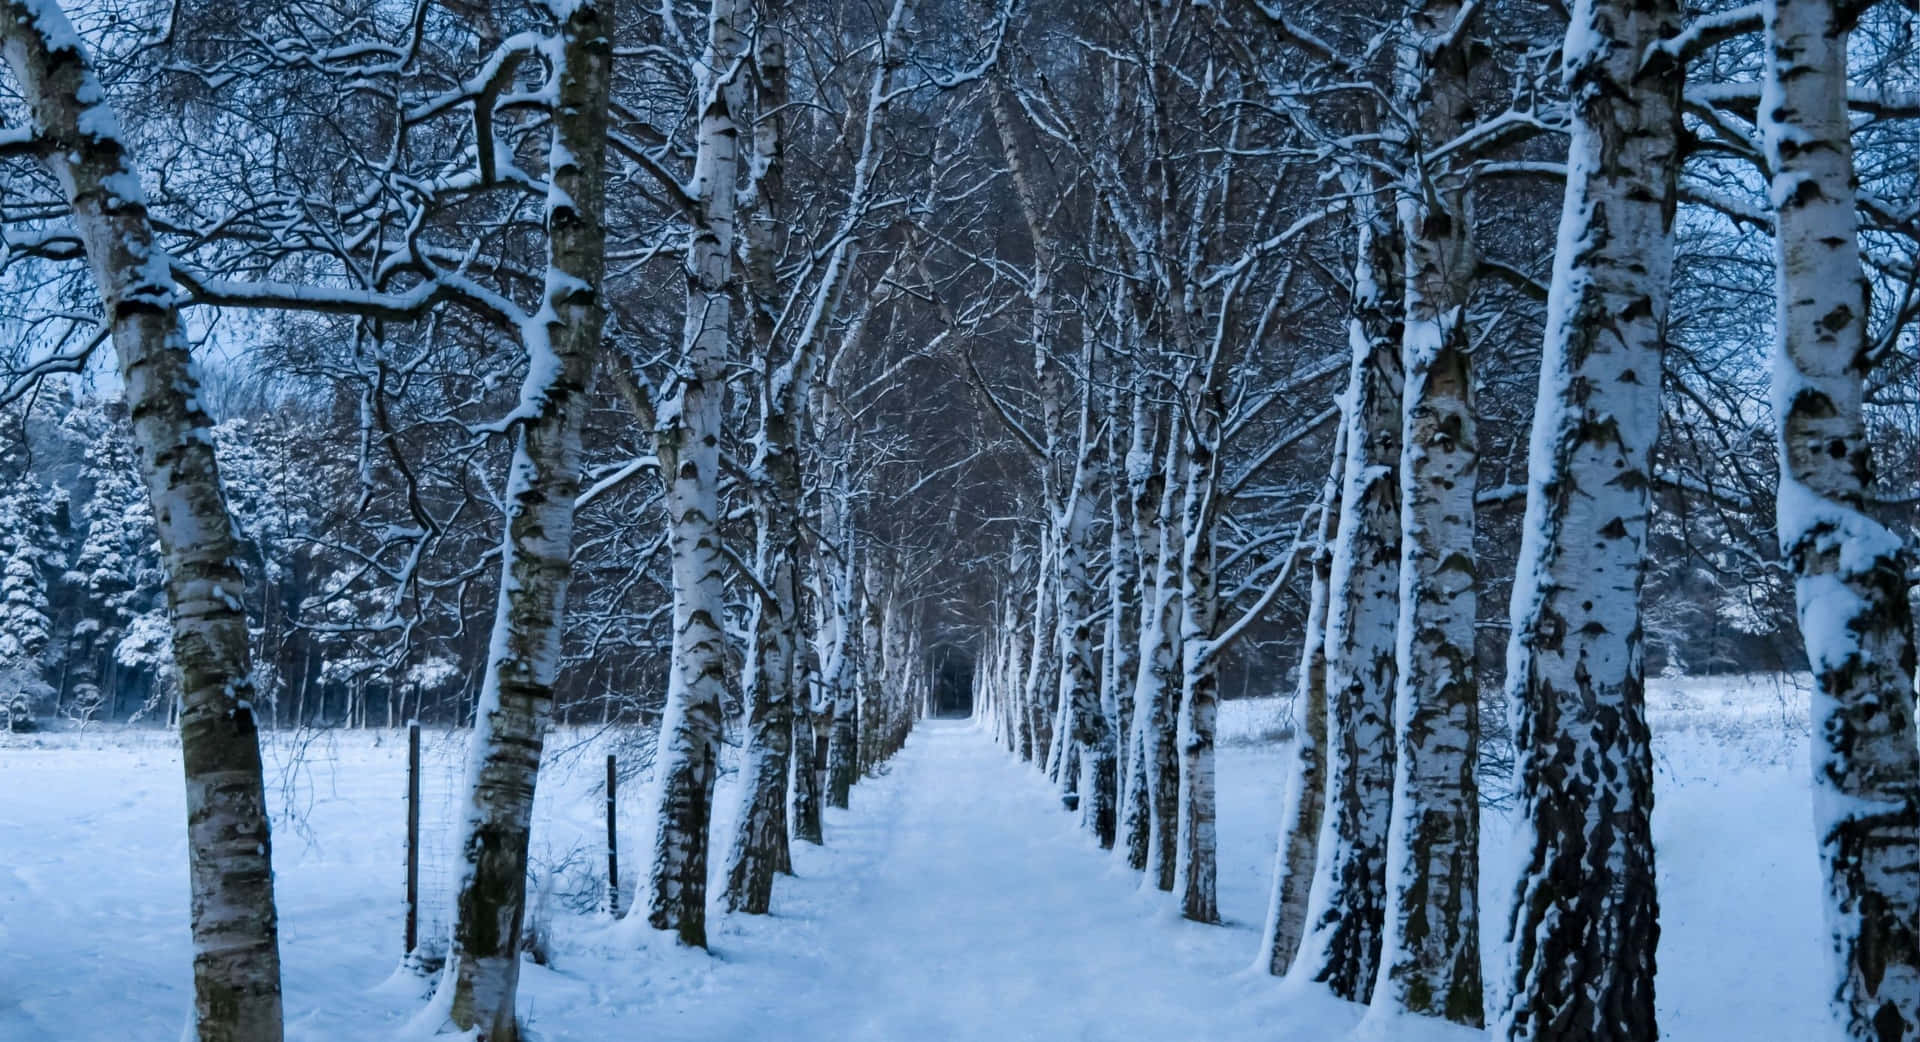 Majestic Winter Trees in Snowy Wonderland Wallpaper